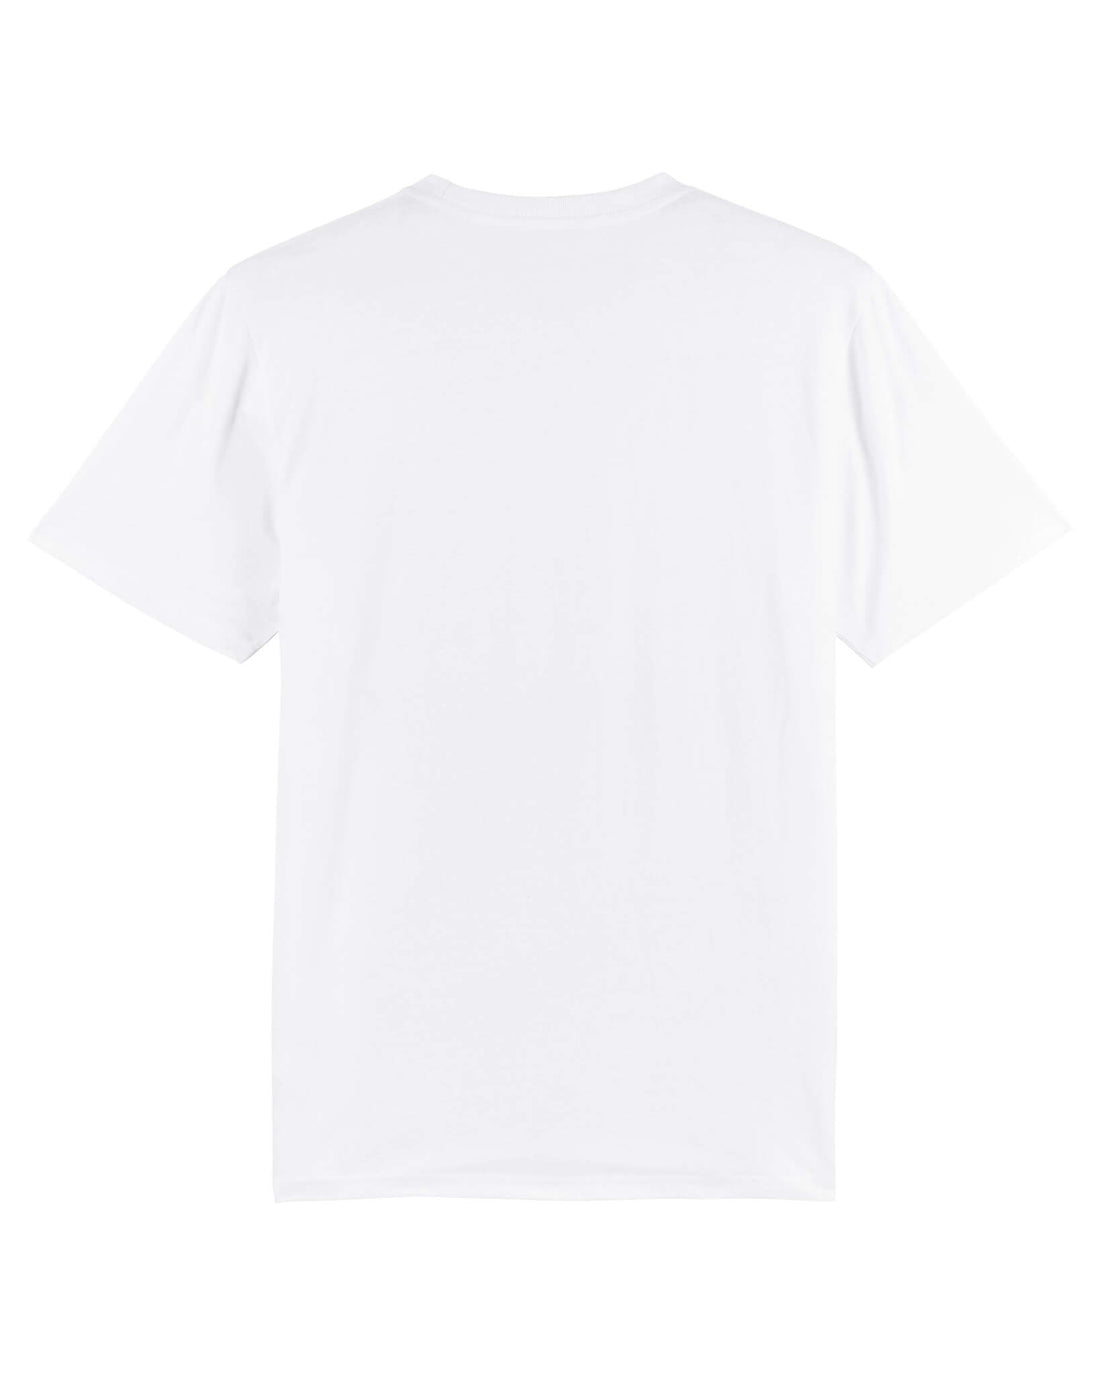 White Skater T-Shirt, Skater Boy Back Print